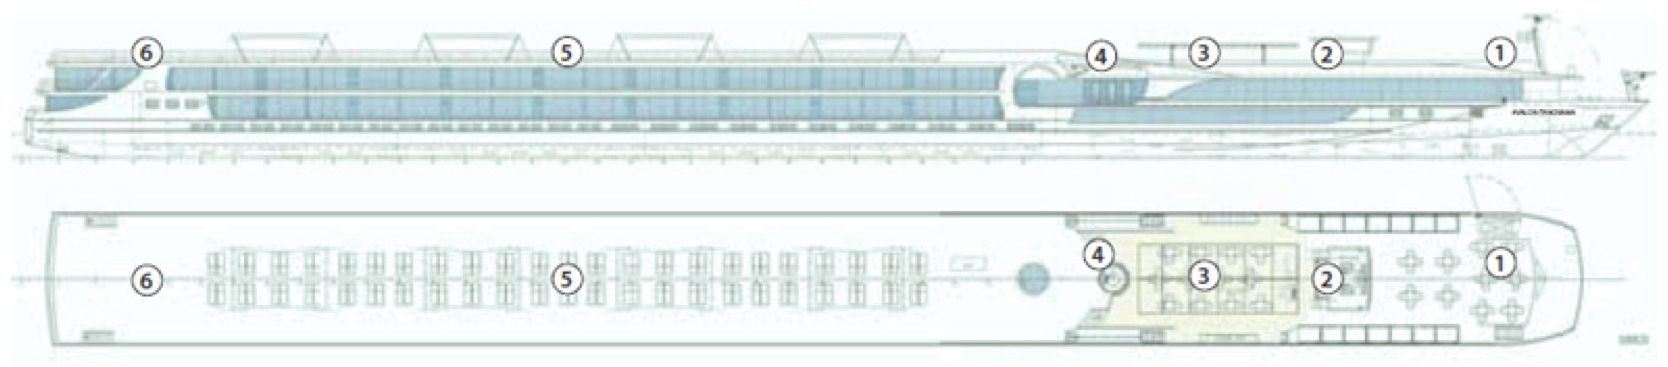 Avalon Panorama-deckplan-Sky Deck